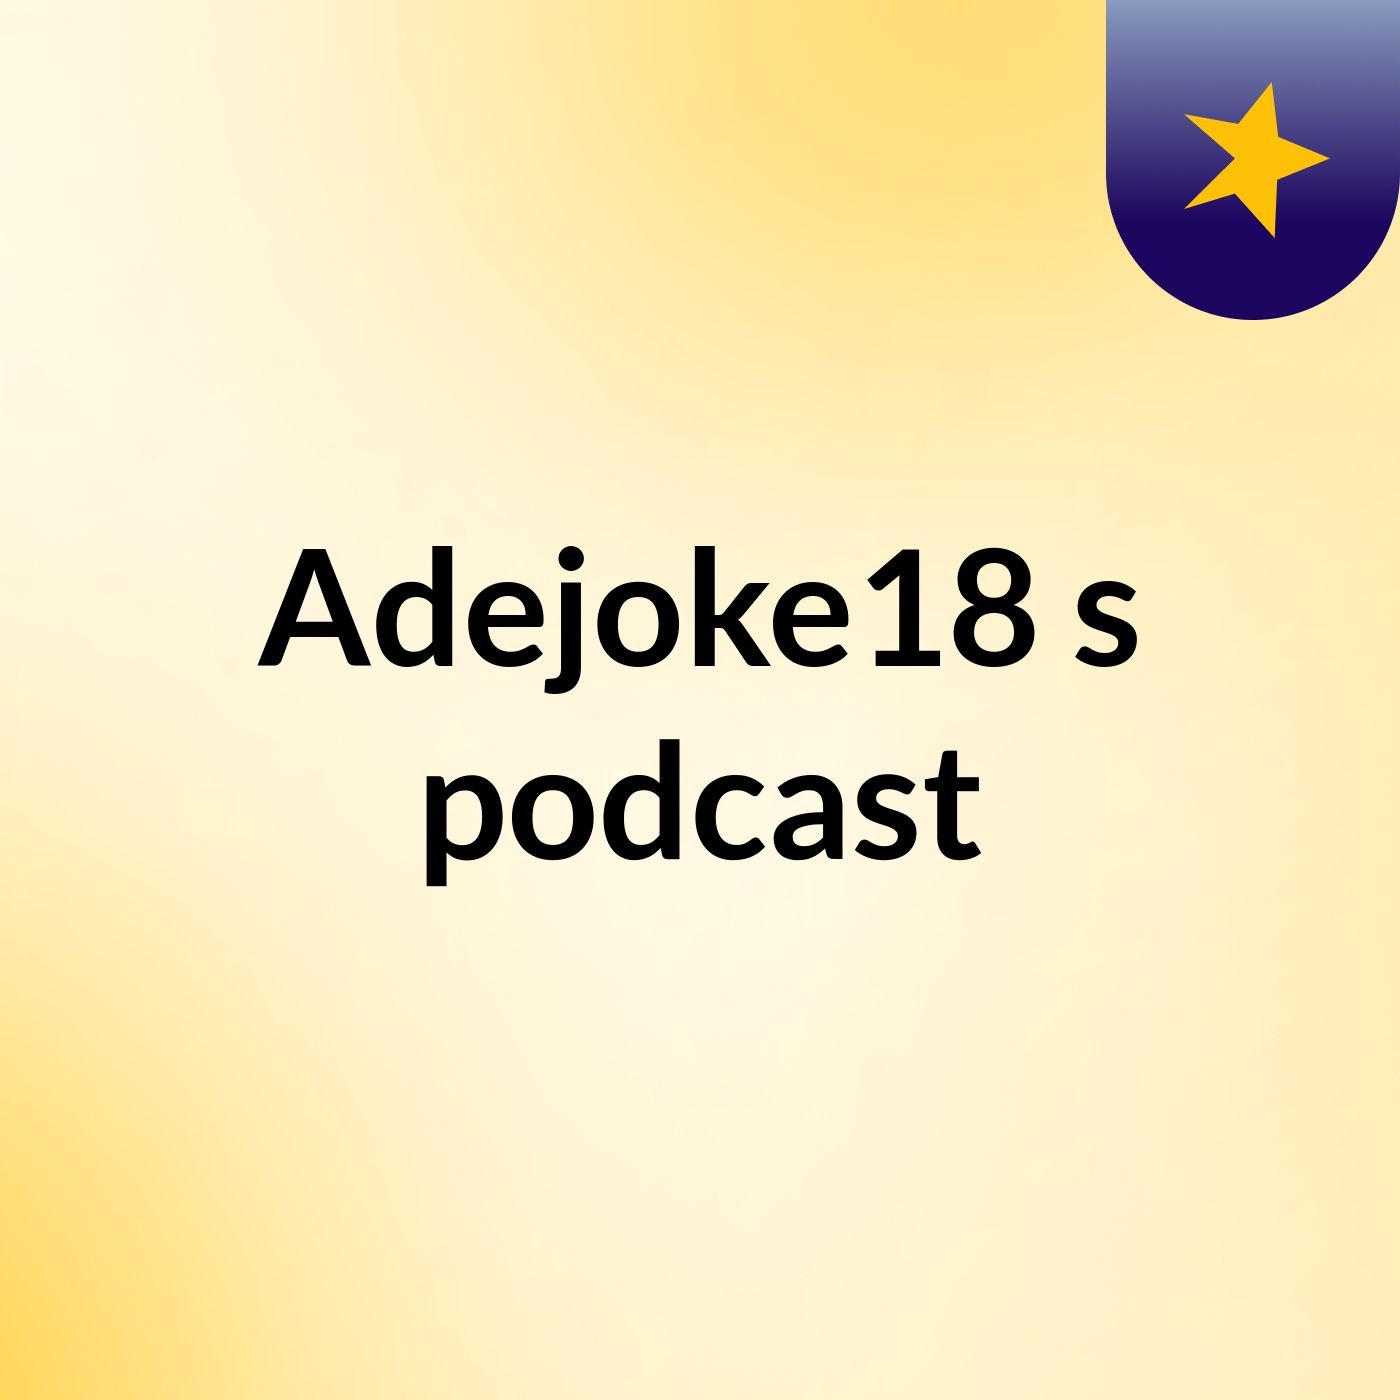 Adejoke18's podcast